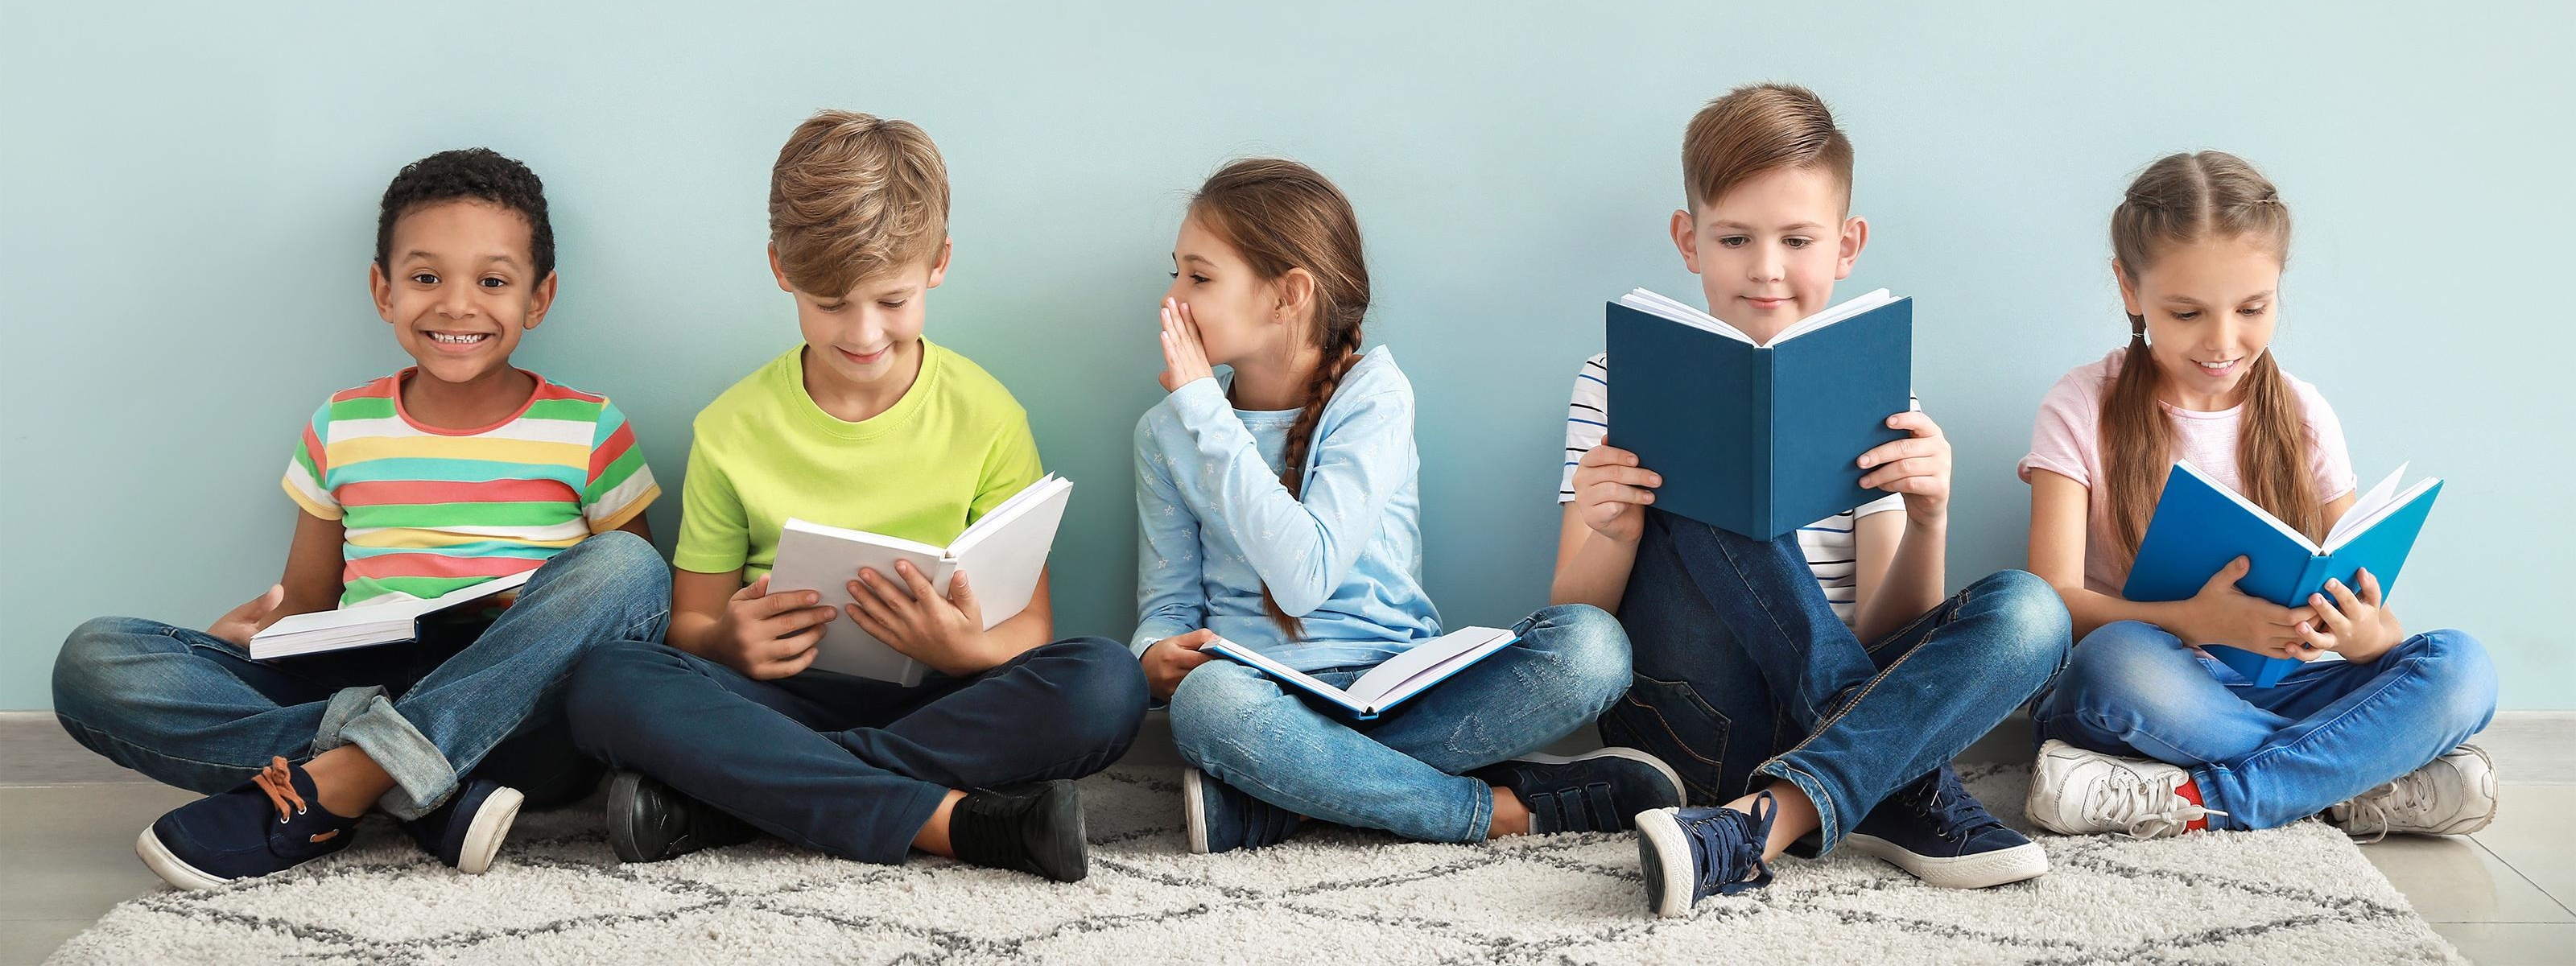 Fünf Kinder sitzen in einer Reihe im Schneidersitz und lesen Bücher